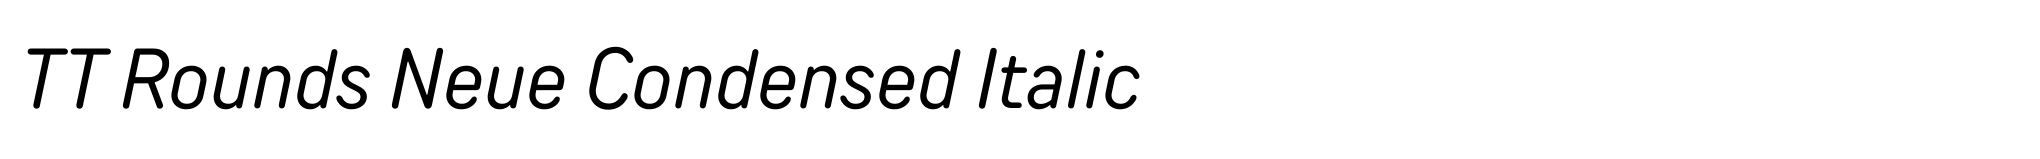 TT Rounds Neue Condensed Italic image